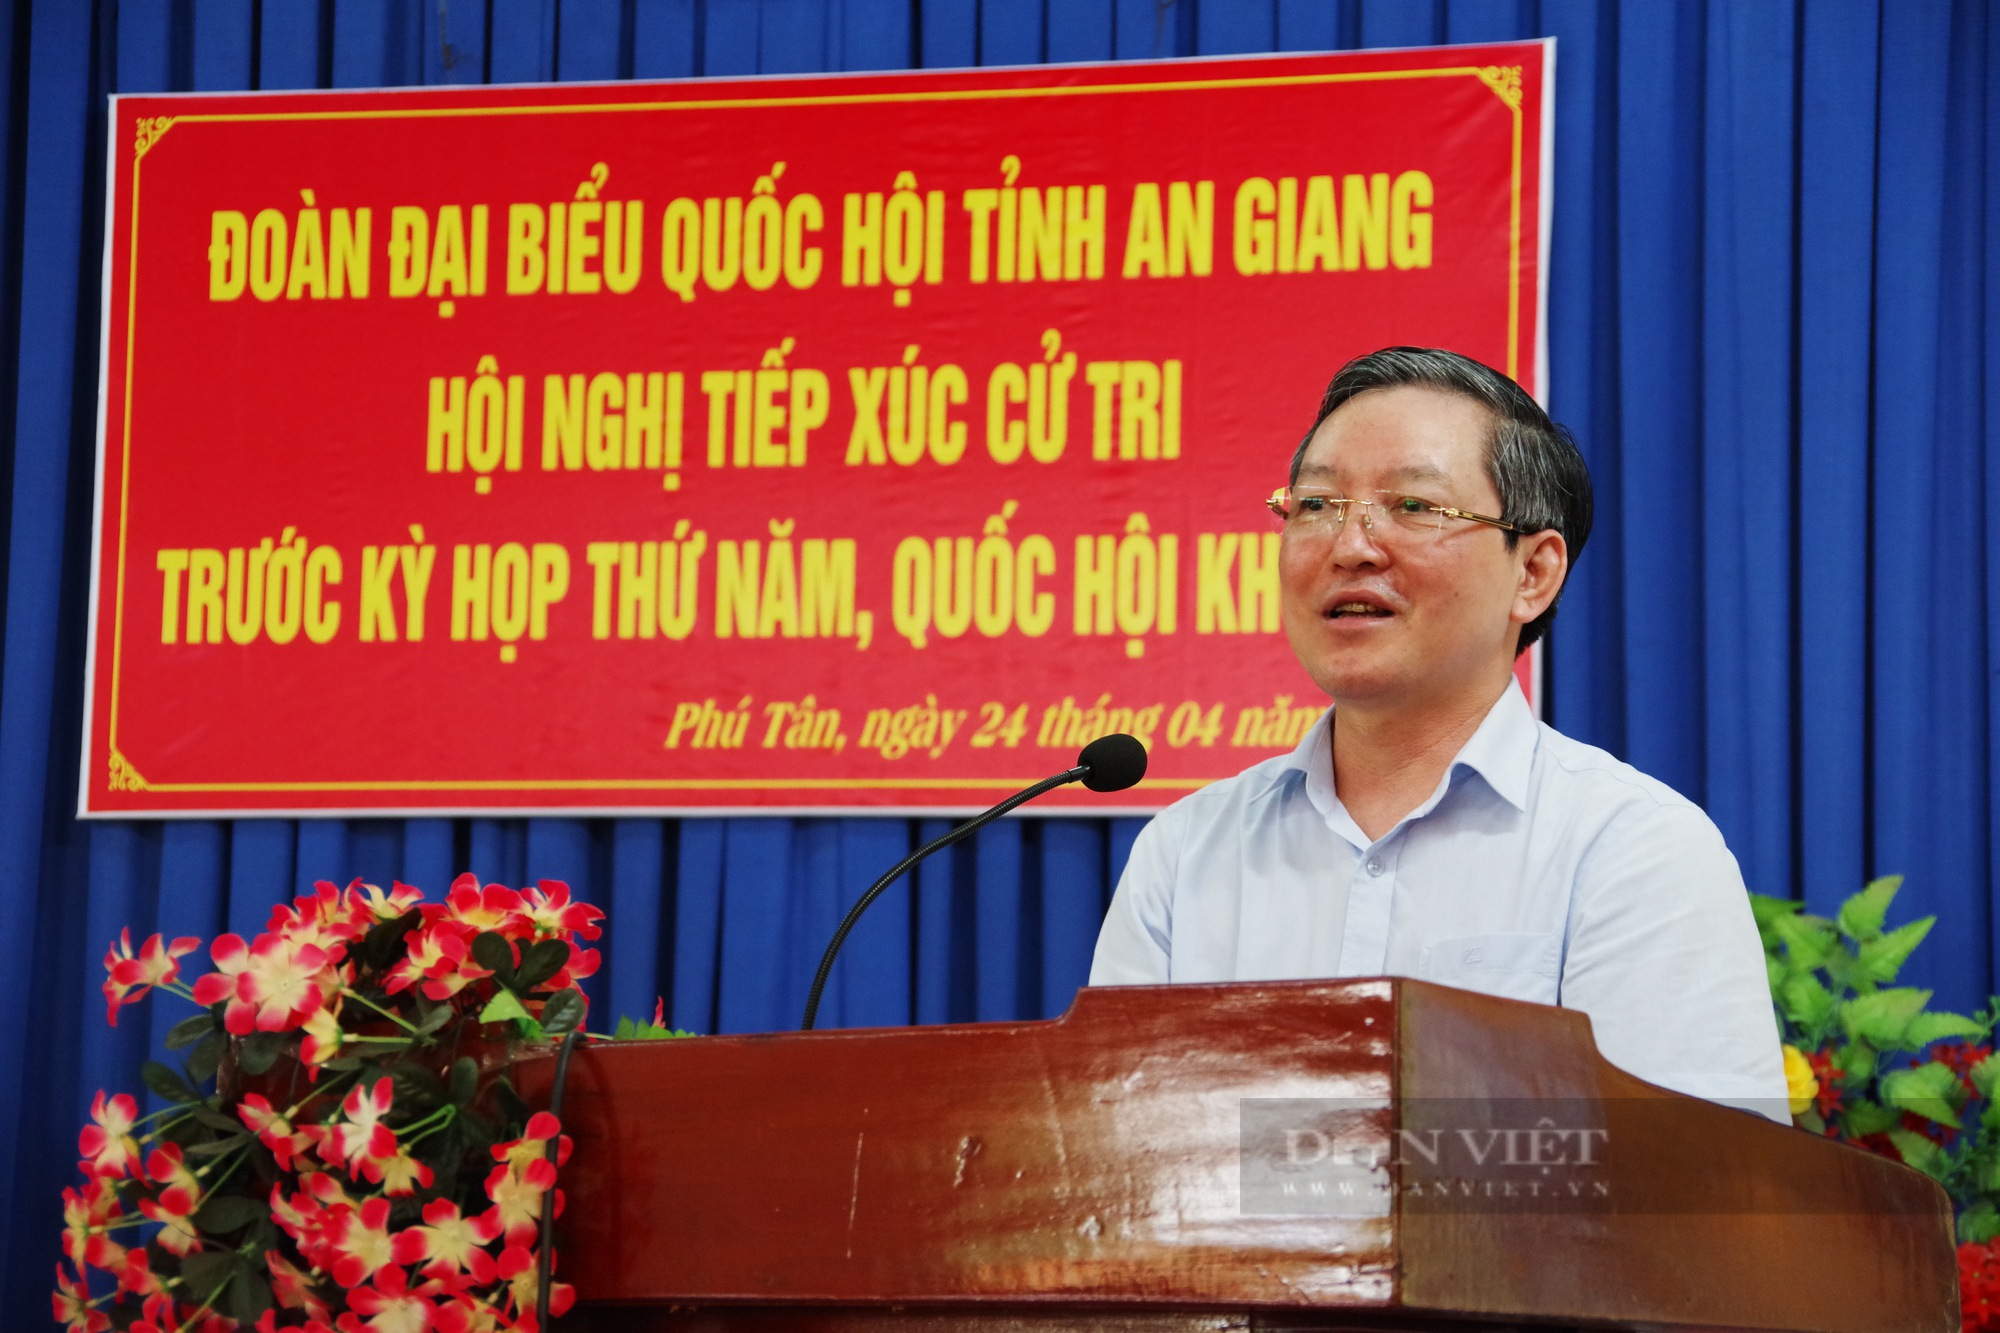 Chủ tịch Hội NDVN và đoàn đại biểu Quốc hội tỉnh An Giang tiếp xúc cử tri huyện Phú Tân  - Ảnh 6.